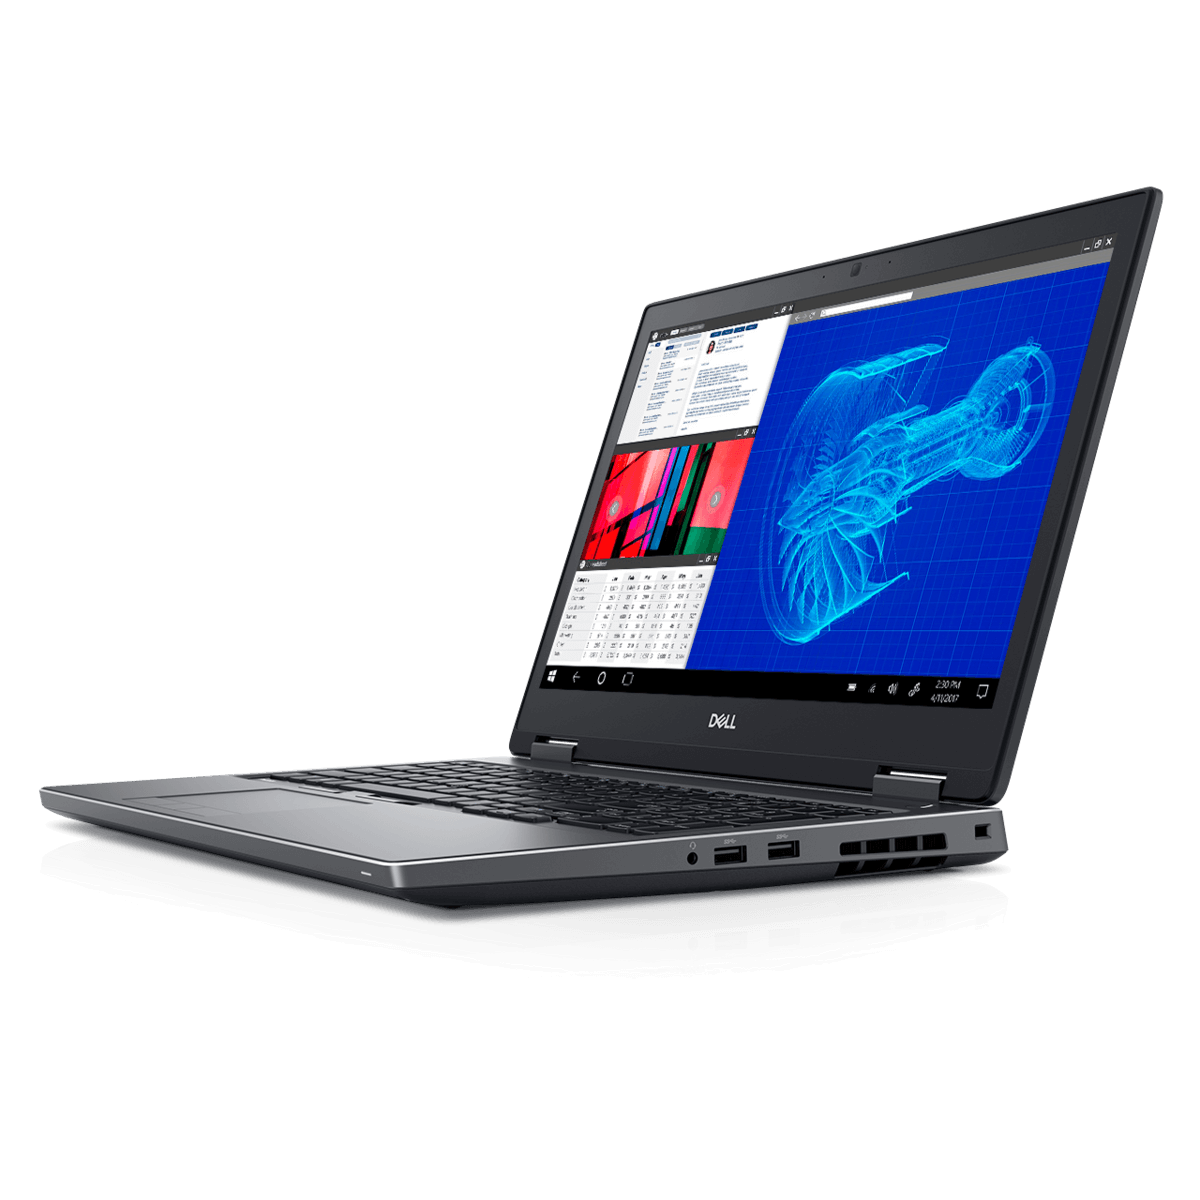 Laptop Dell Precision 7530 Core i7-8850H, Ram 32GB, SSD 512GB, 15.6 Inch FHD, Nvidia Quadro P2000